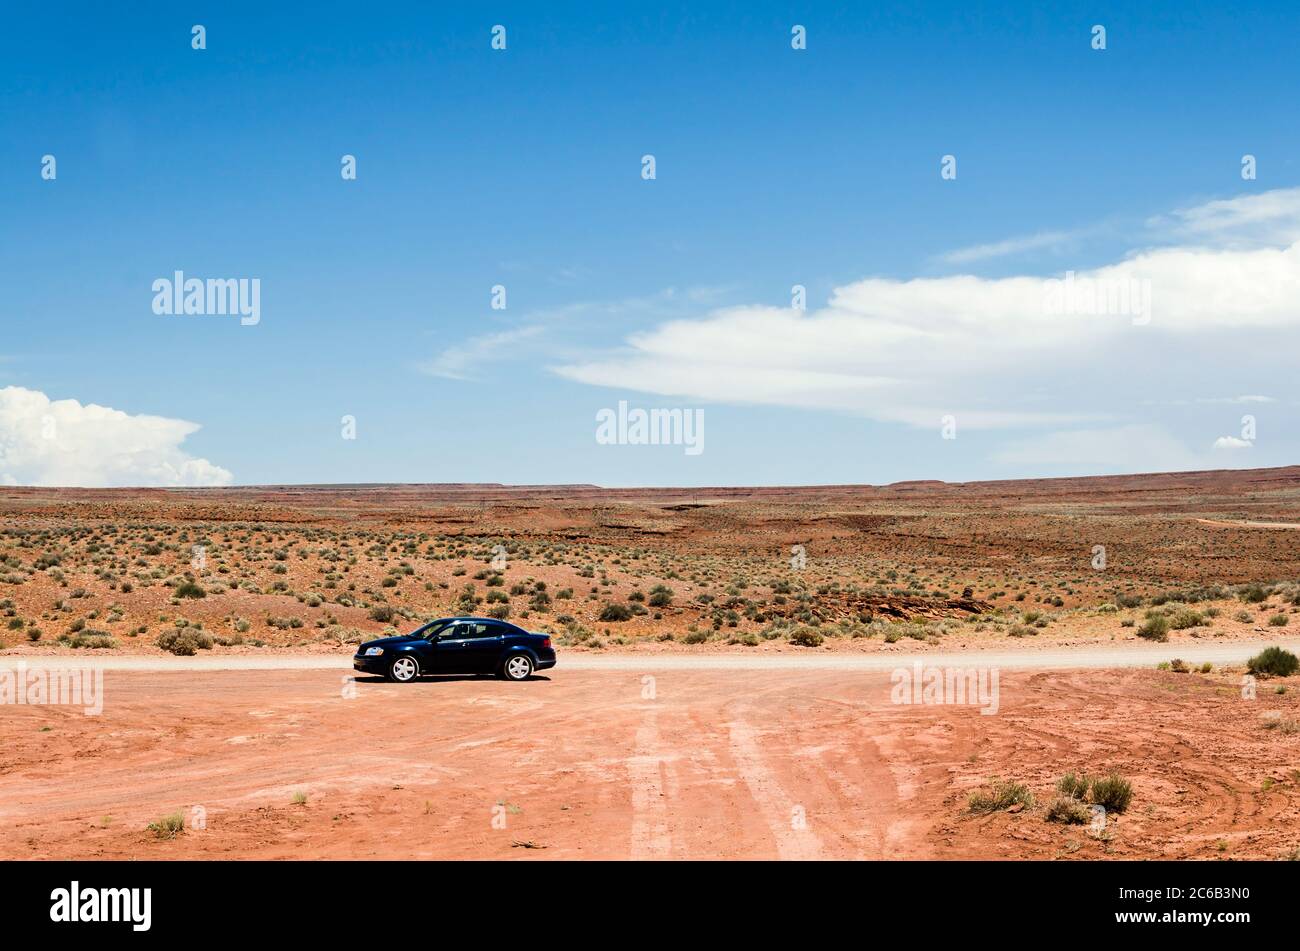 Auto auf einer unbefestigten Straße in einer malerischen Wüstenlandschaft Stockfoto